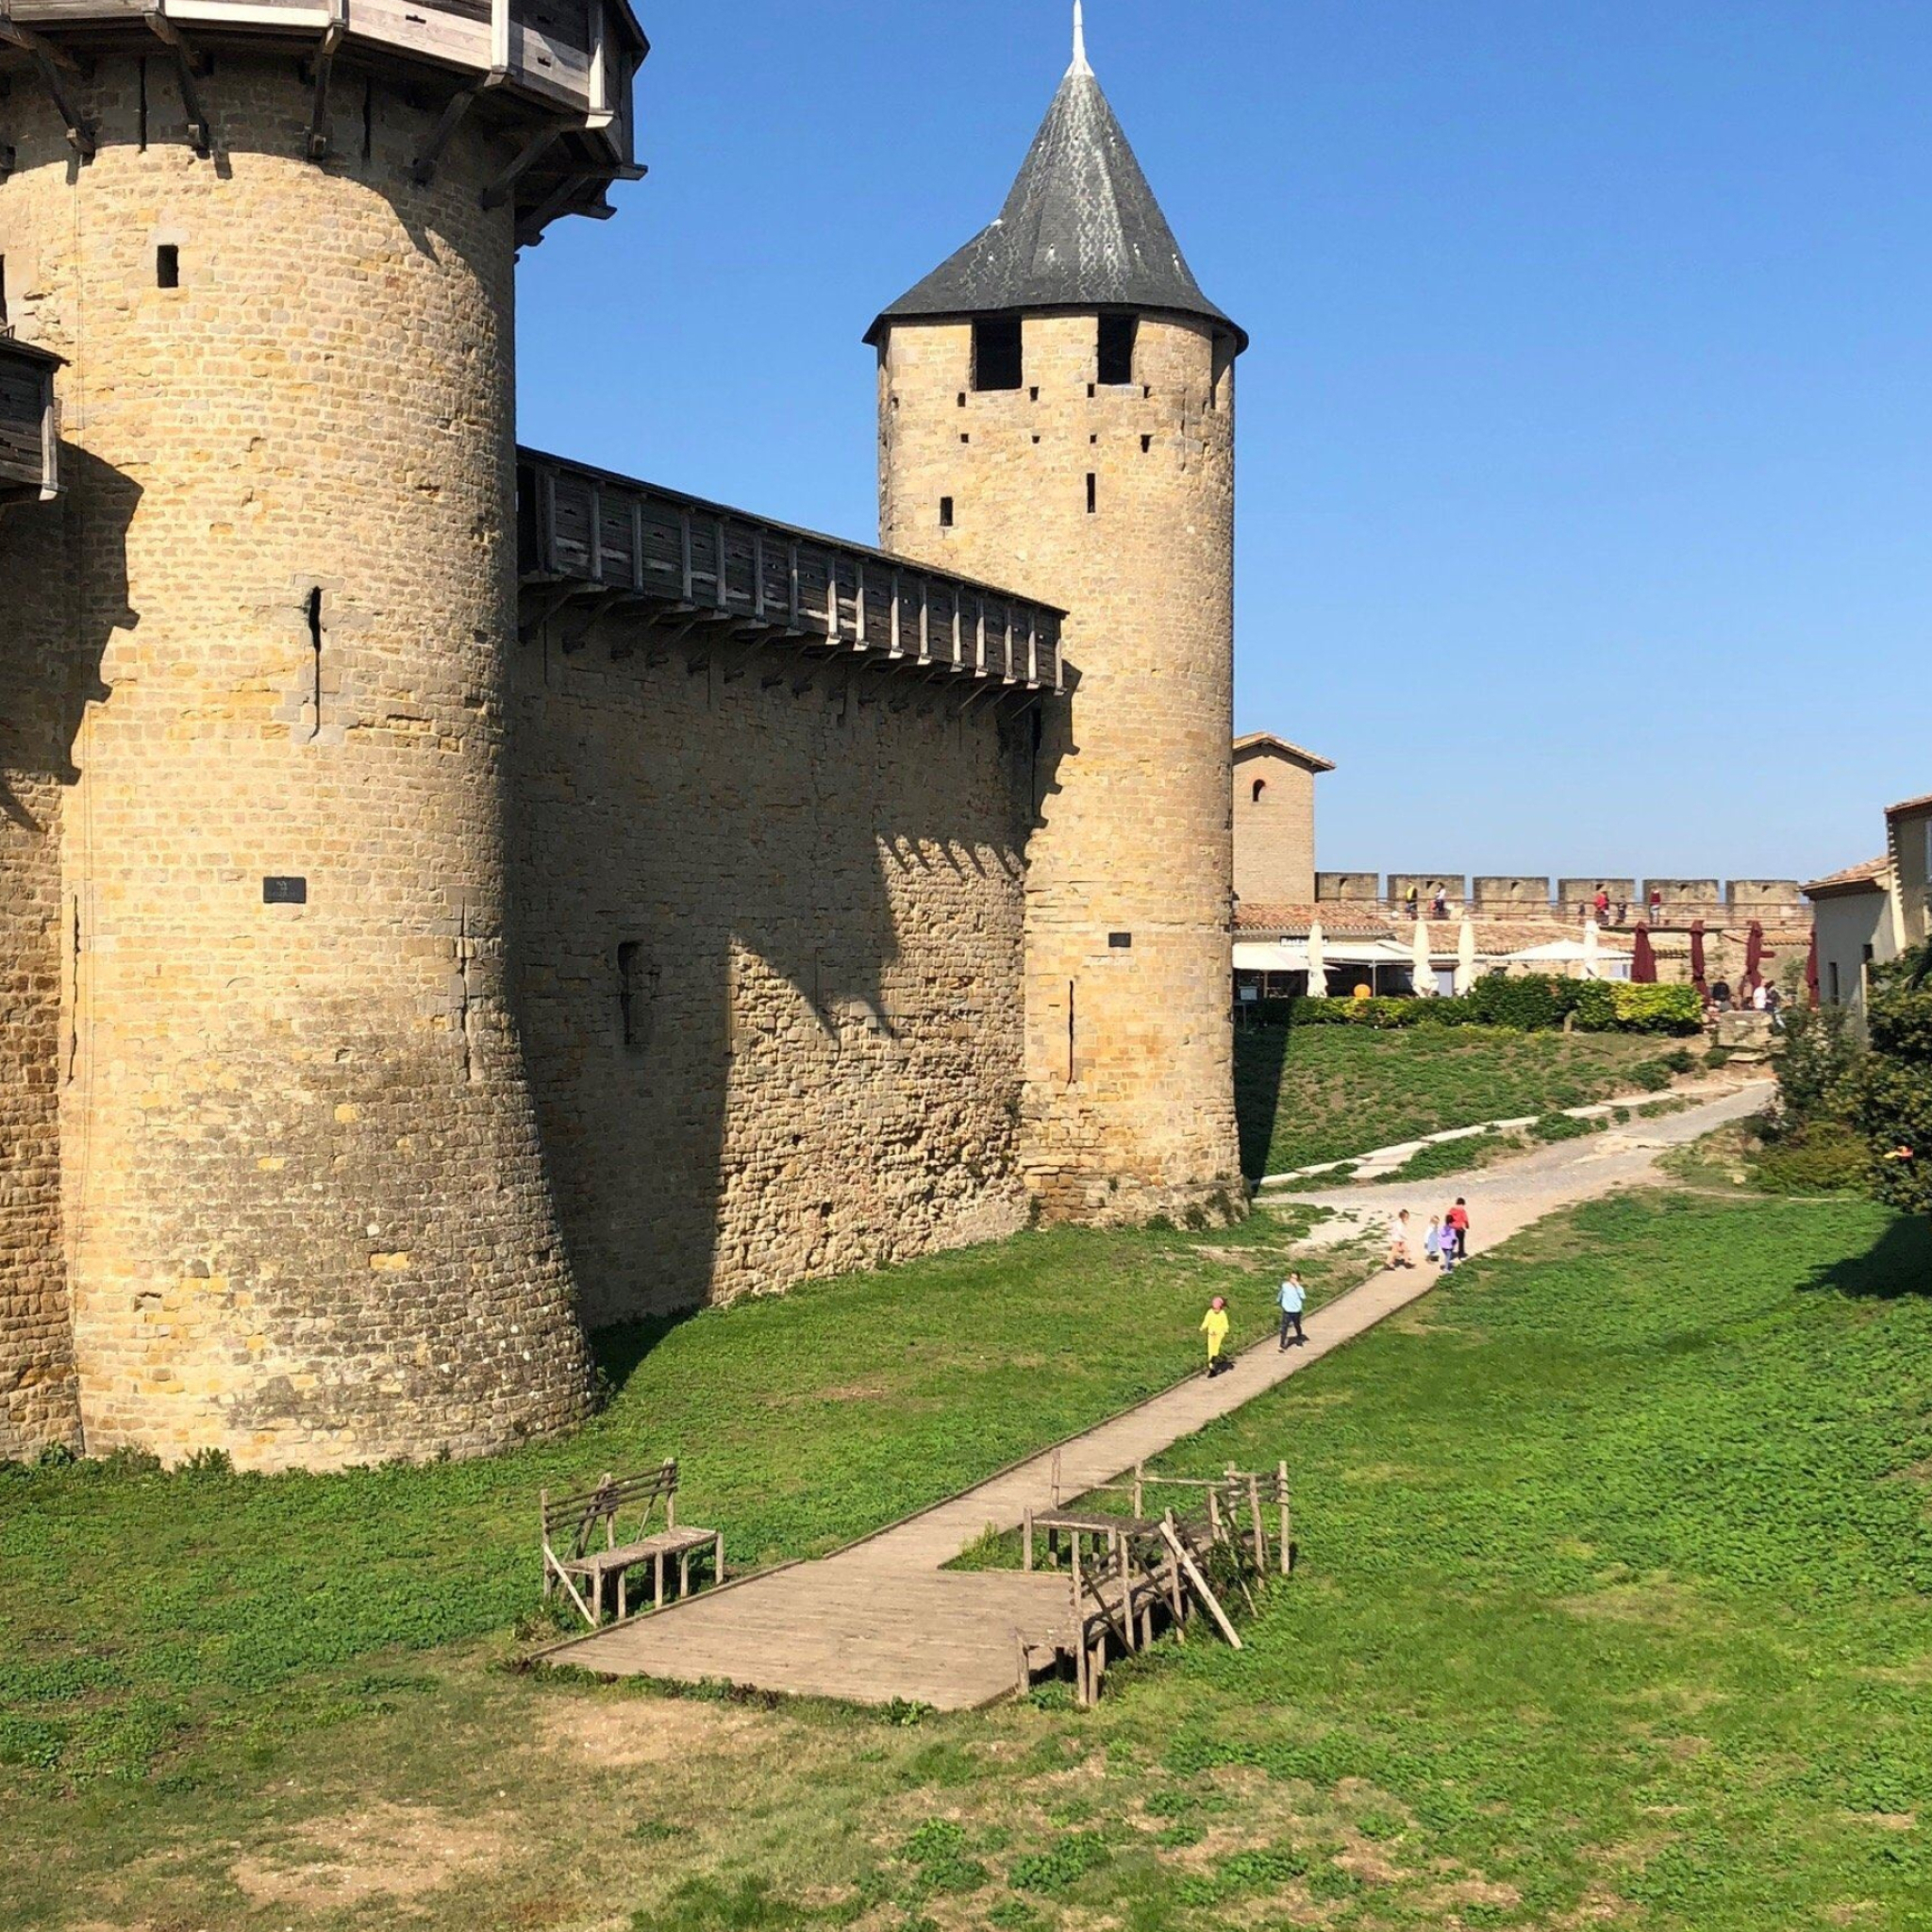 Attraktionen in der Nähe des Schlosses Carcassonne, 2050x2050 HD Handy